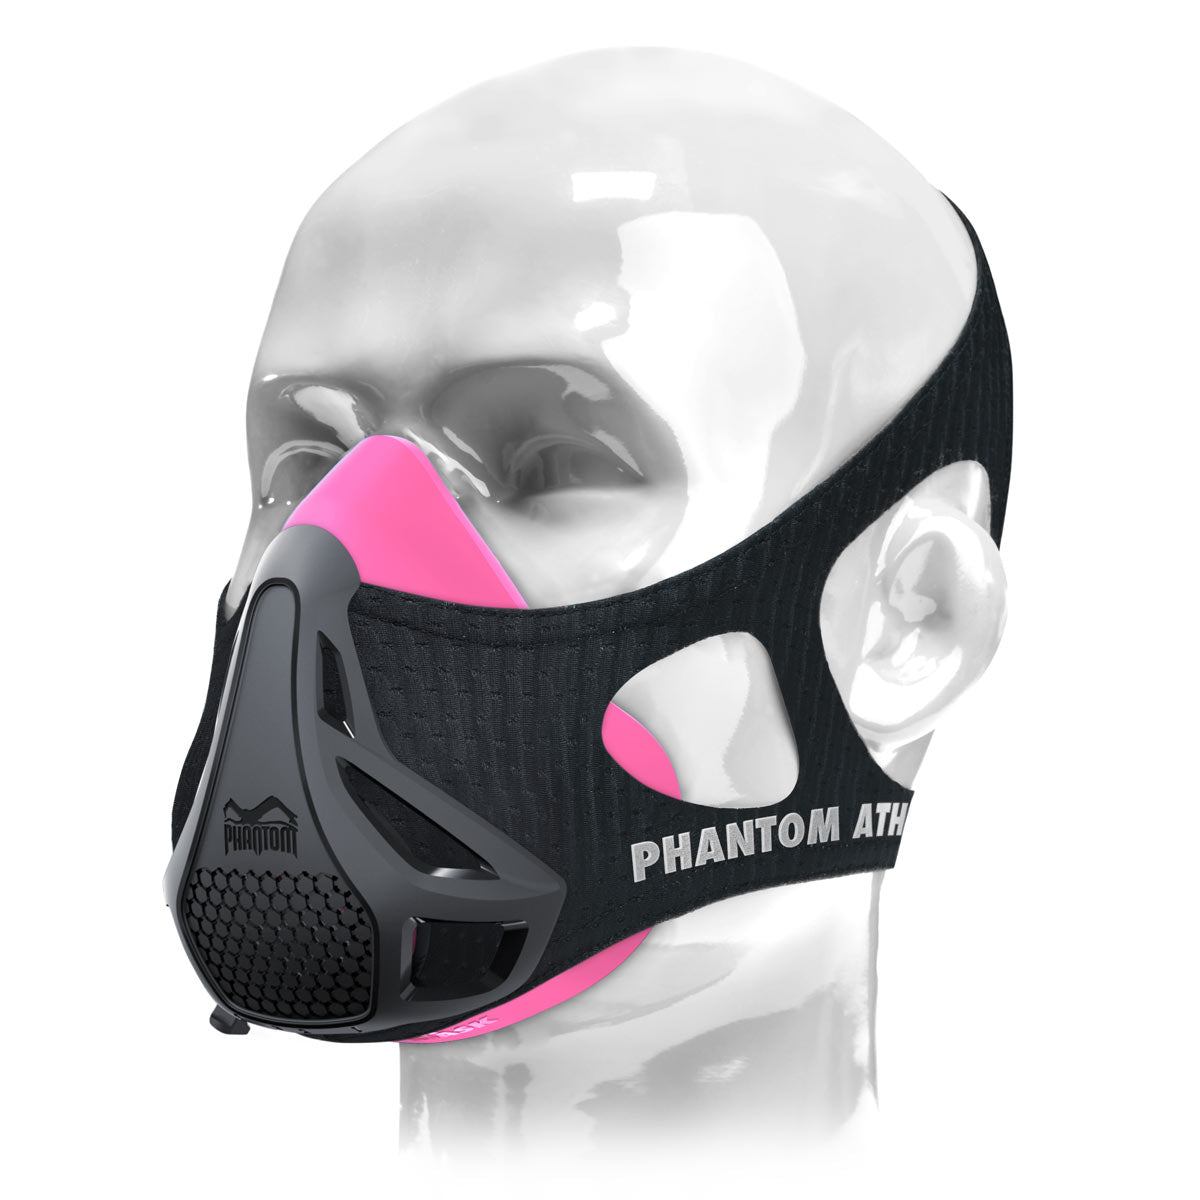 La máscara de entrenamiento Phantom . El original. Patentado y premiado para llevar tu fitness al siguiente nivel. Ahora en rosa/negro.